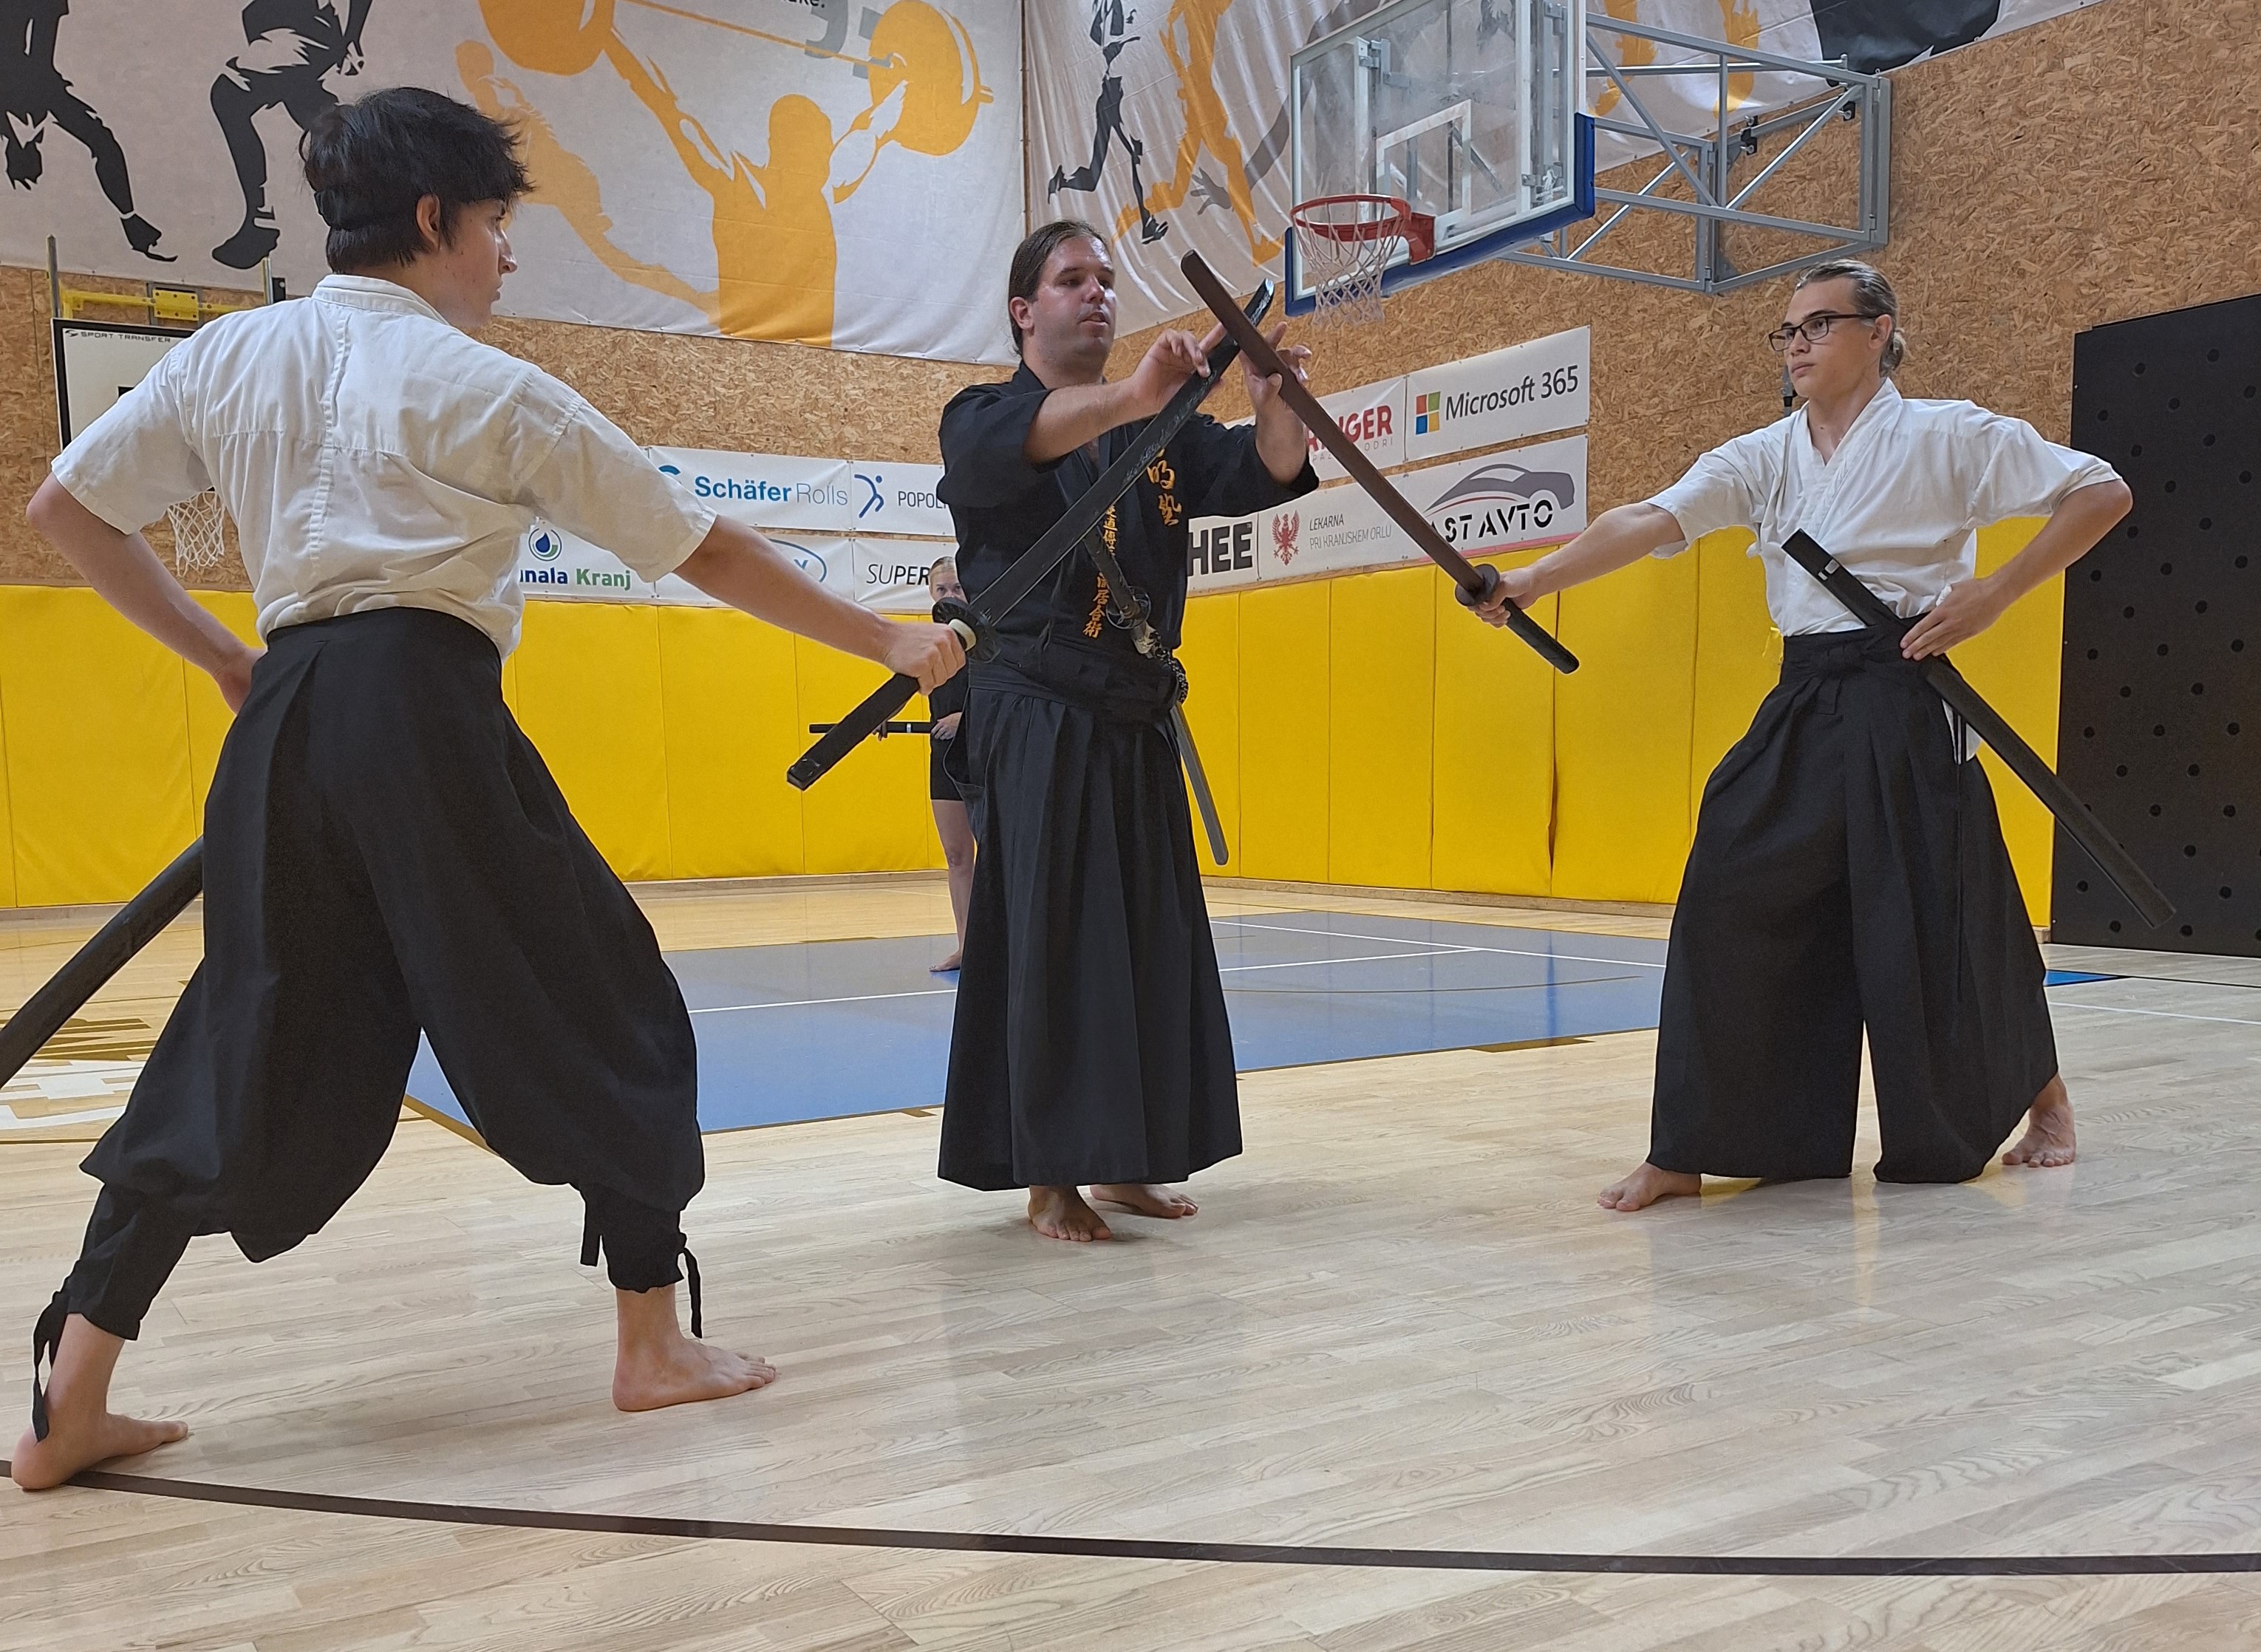 Vloga in pomen senseija v samurajski tradiciji